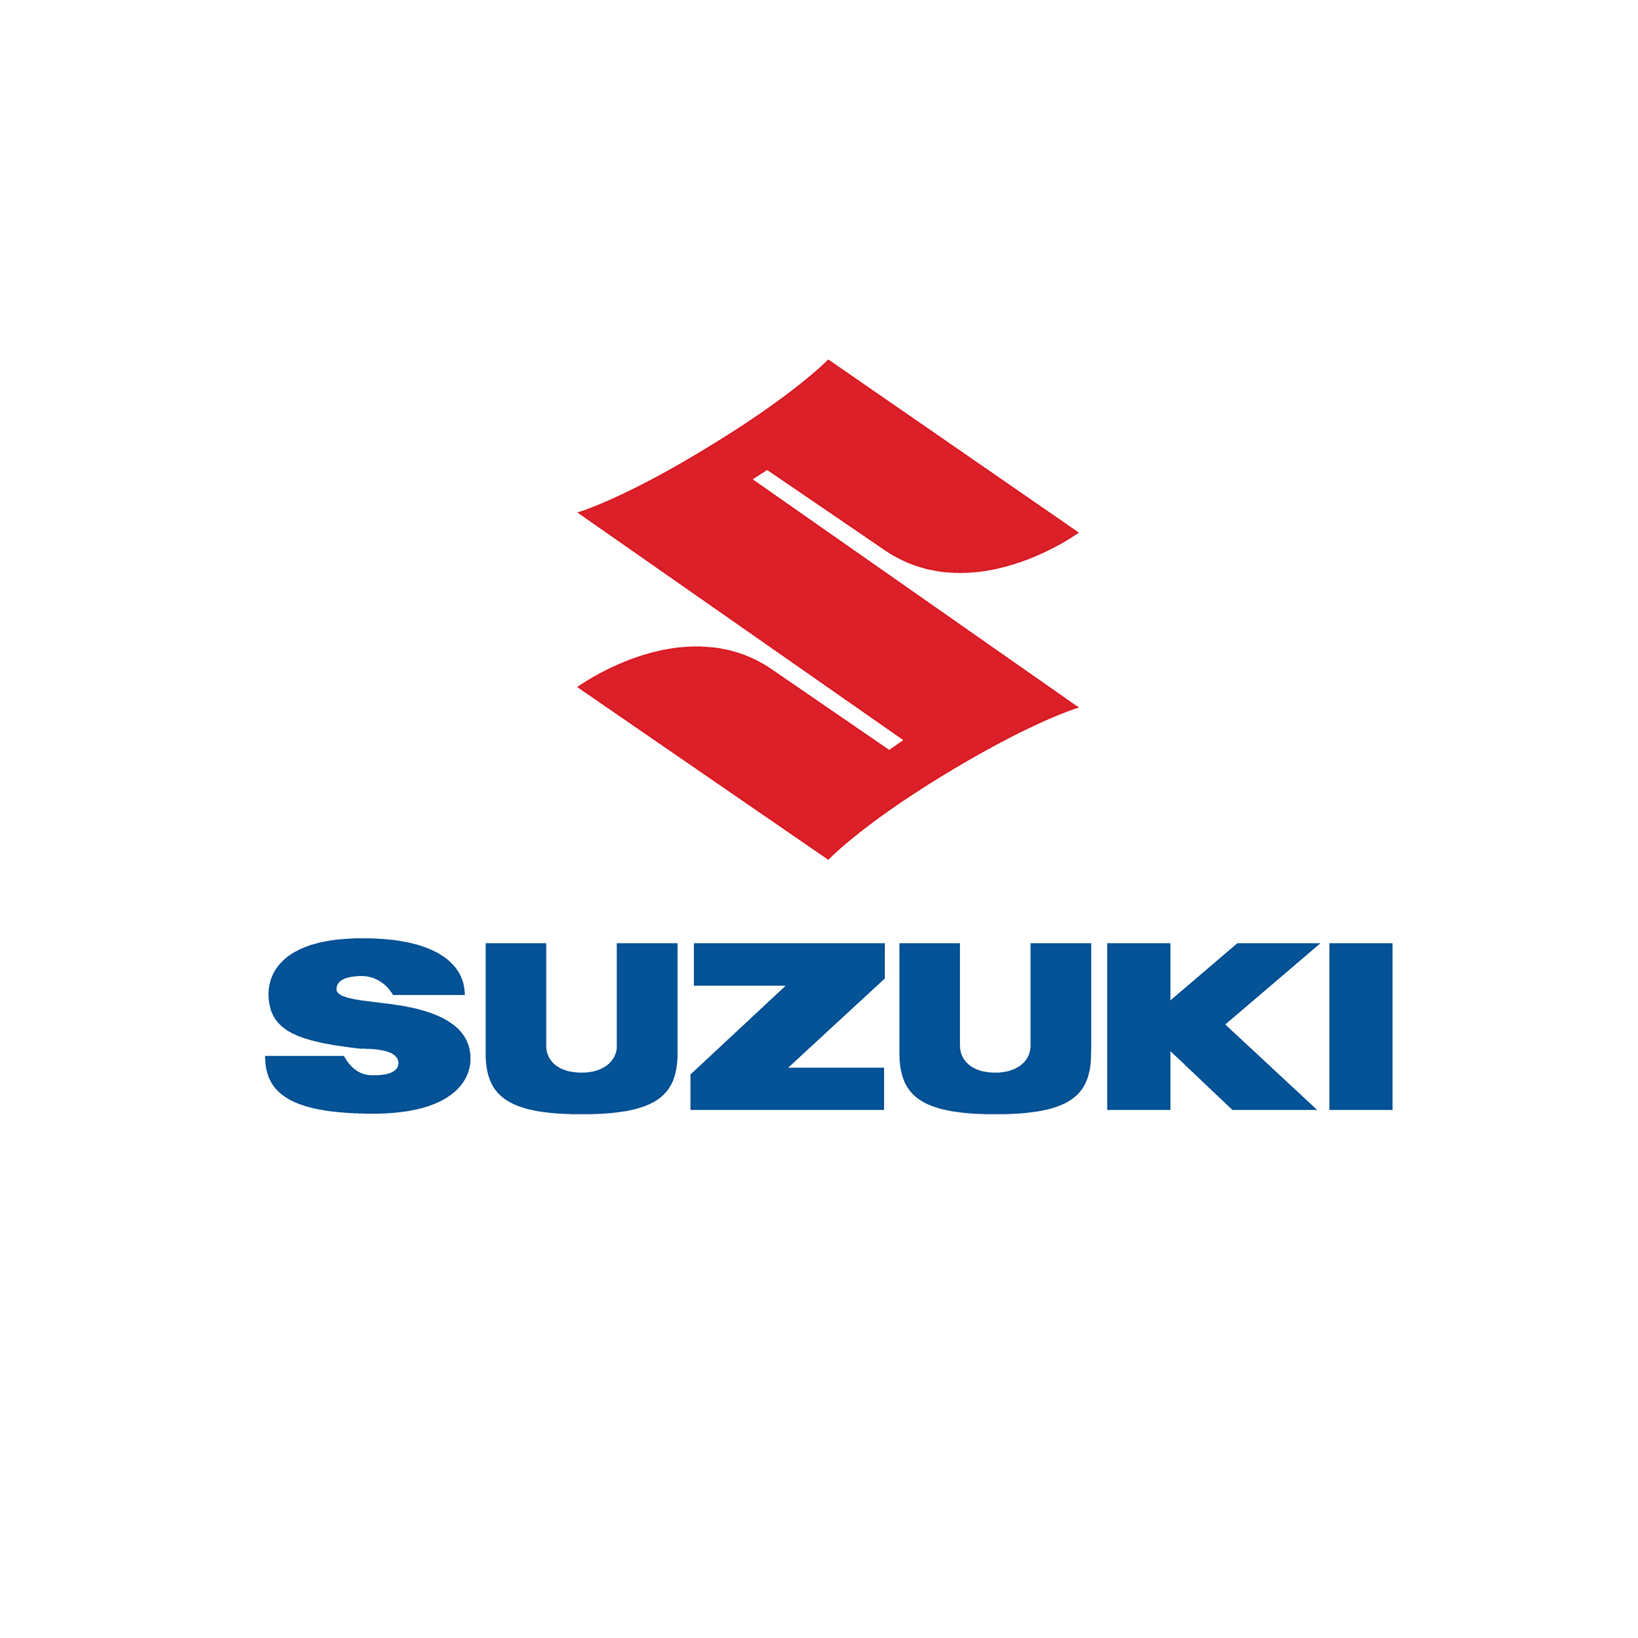 وكلاء سيارات سوزوكي Suzuki في الاردن الشركة التجارية الصناعية 